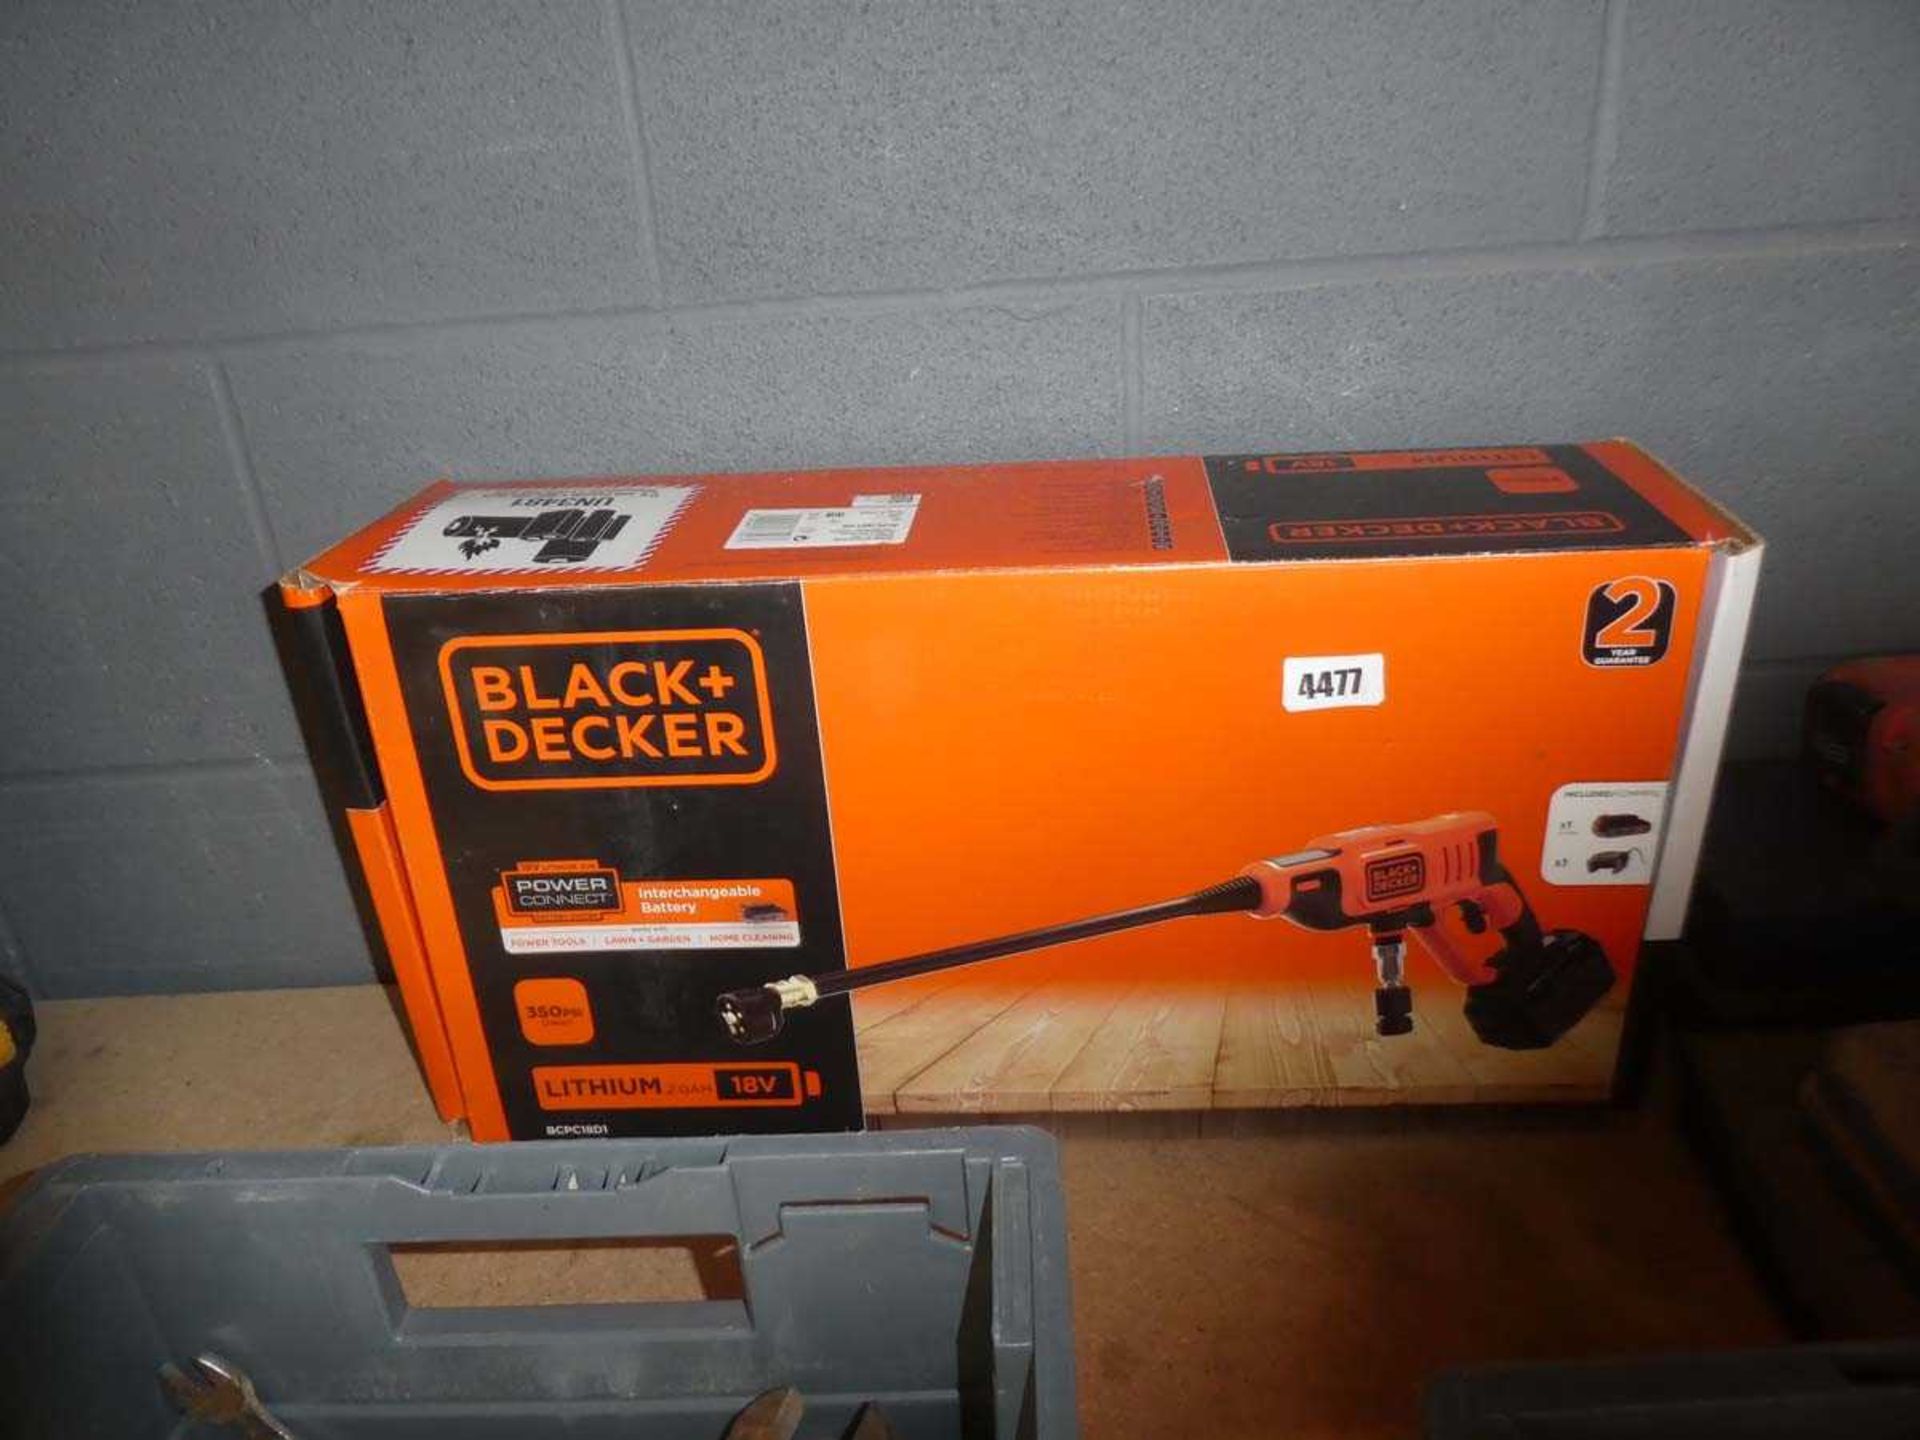 Black & Decker battery powered pressure washer gun